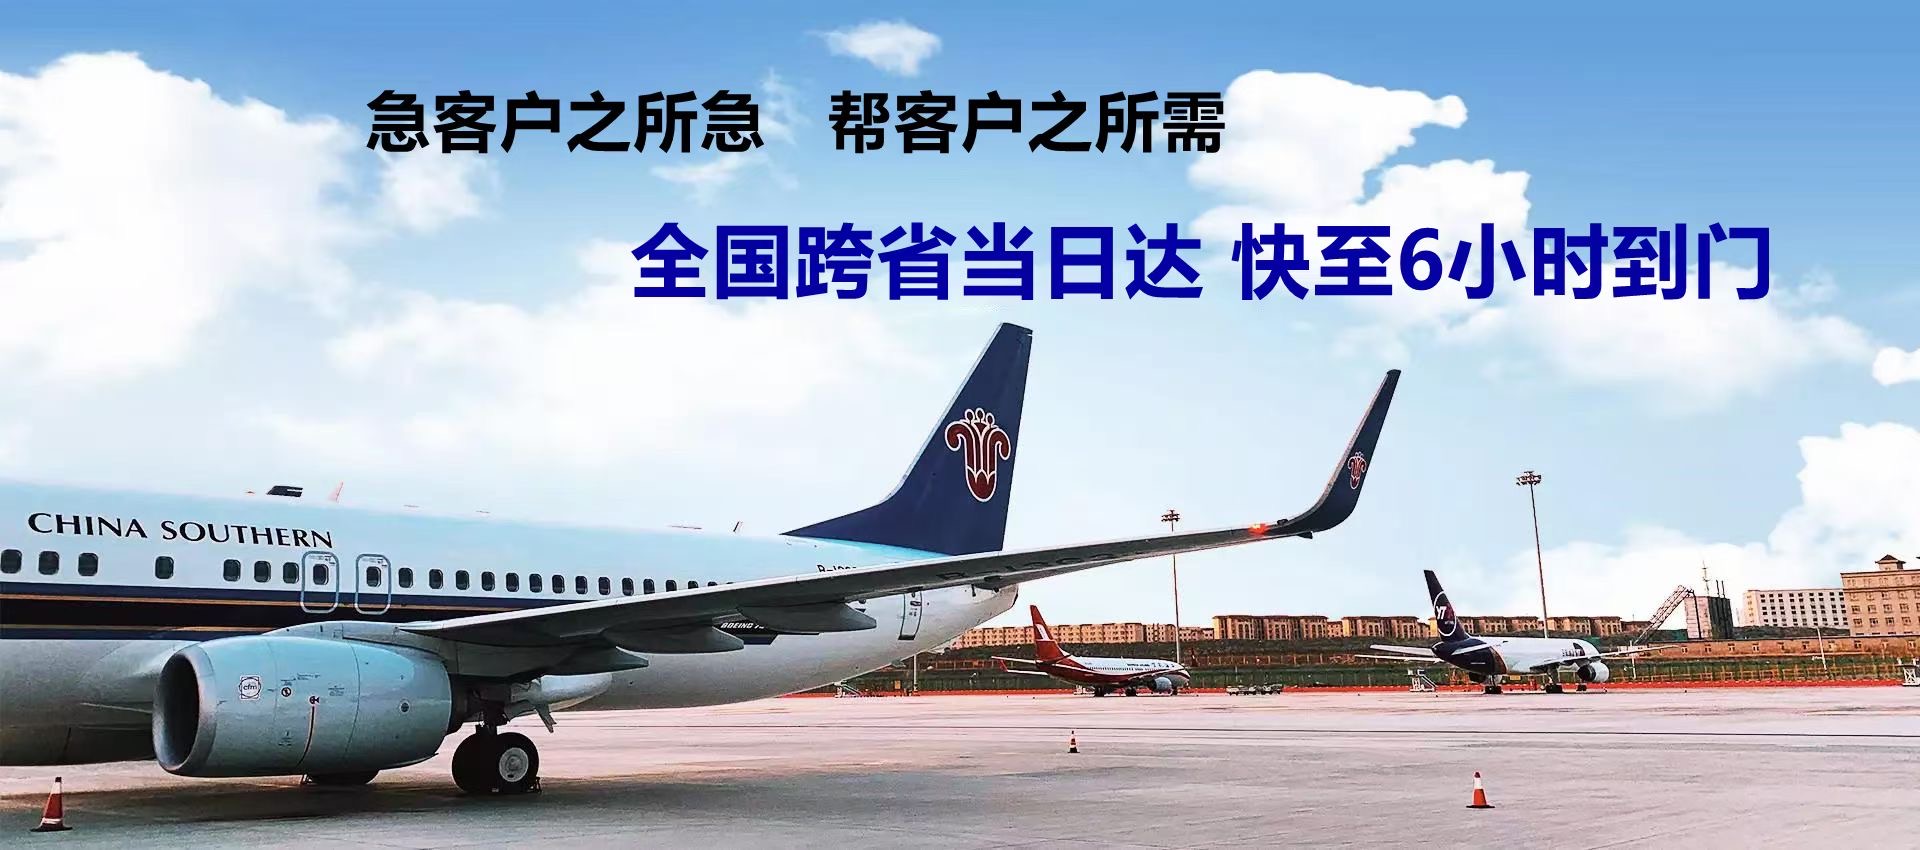 台湾-成都航空货运-限时达航空物流公司